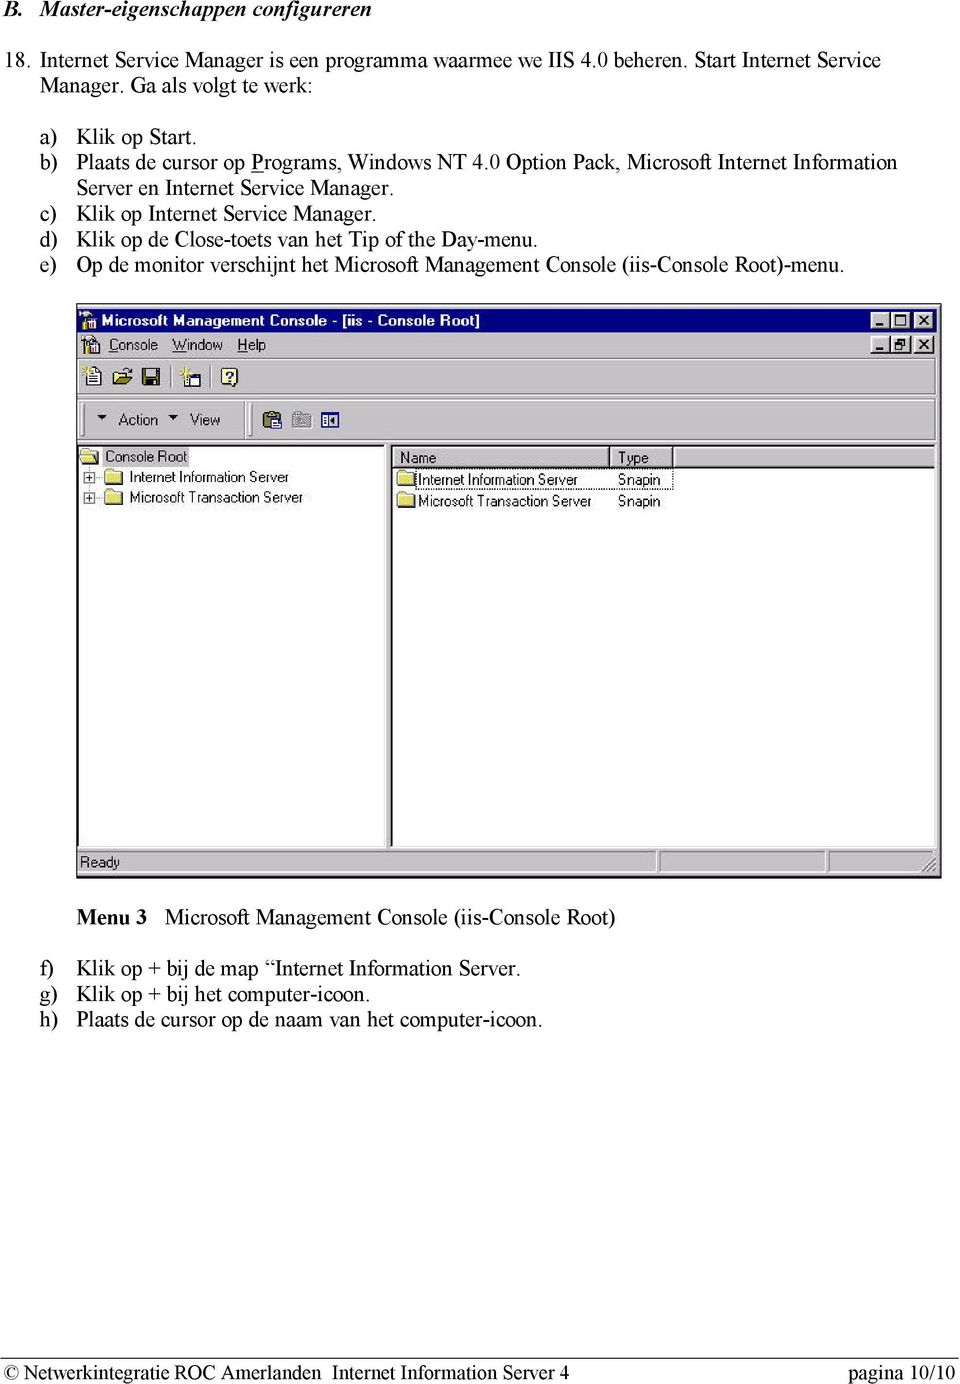 d) Klik op de Close-toets van het Tip of the Day-menu. e) Op de monitor verschijnt het Microsoft Management Console (iis-console Root)-menu.